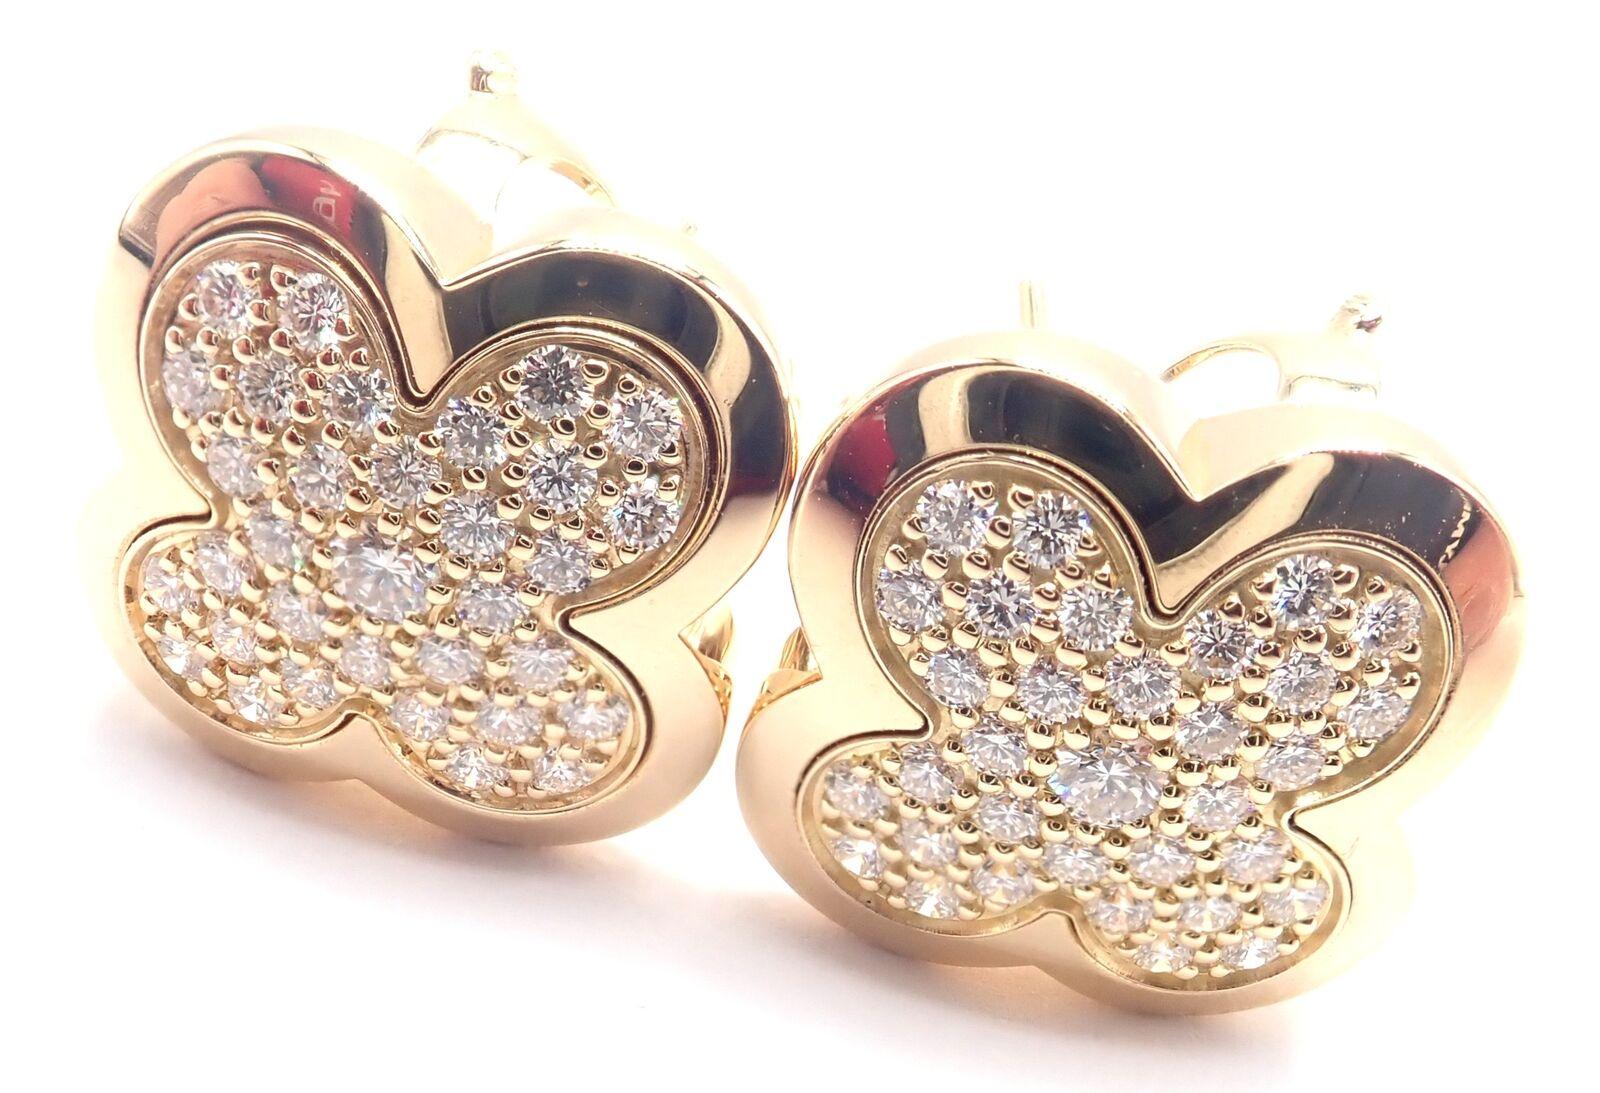 Alhambra-Ohrringe mit Diamanten aus 18 Karat Gelbgold von Van Cleef & Arpels.
Mit rundem Brillantschliff Diamant VVS1 Klarheit, E Farbe Gesamtgewicht 1,65ct
Diese Ohrringe sind für gepiercte Ohren.
Einzelheiten:
Abmessungen: 16mm x 16mm
Gewicht: